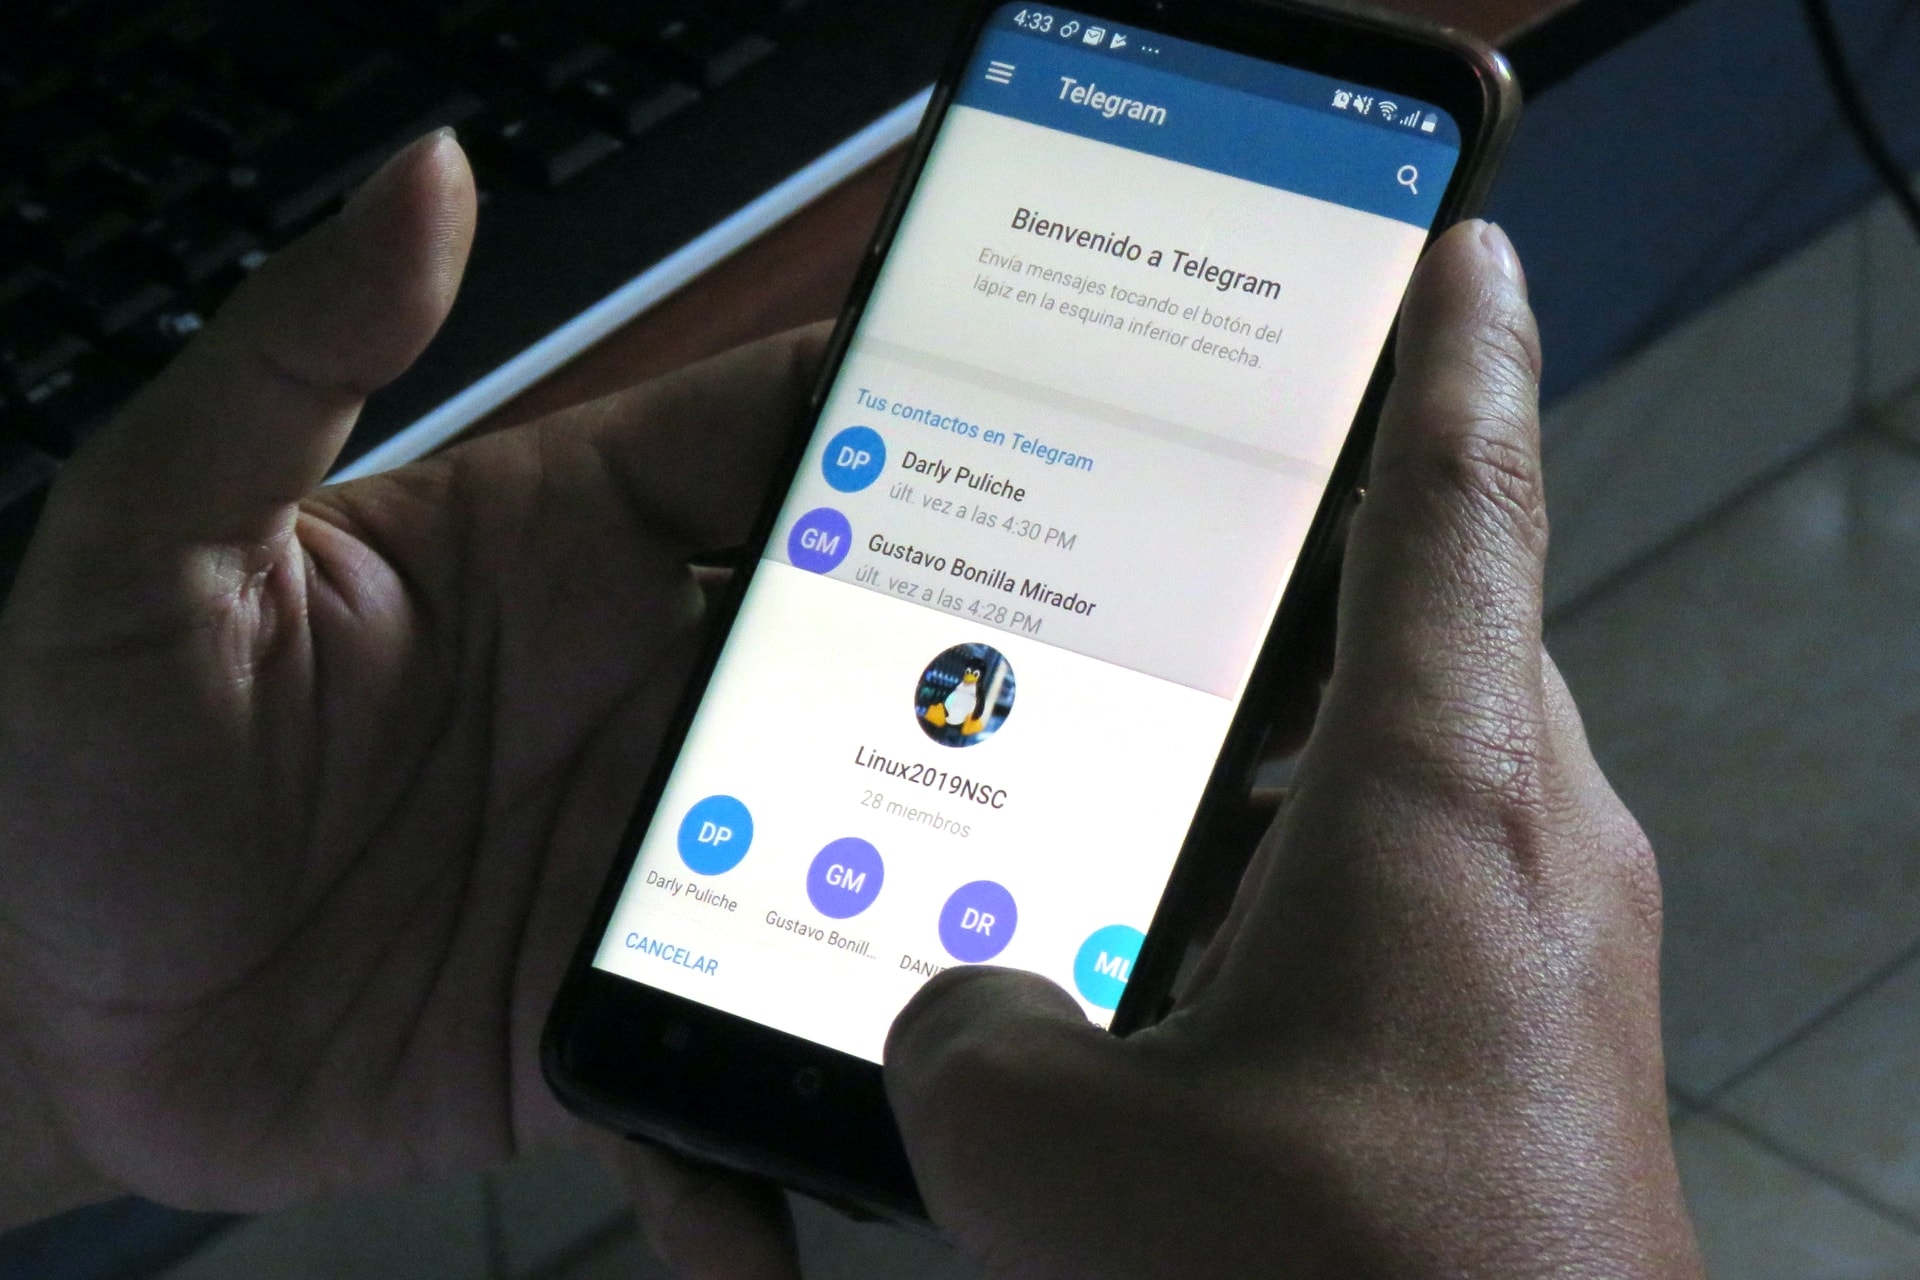 Cara Mudah Mengirim Pesan Tanpa Suara di Telegram